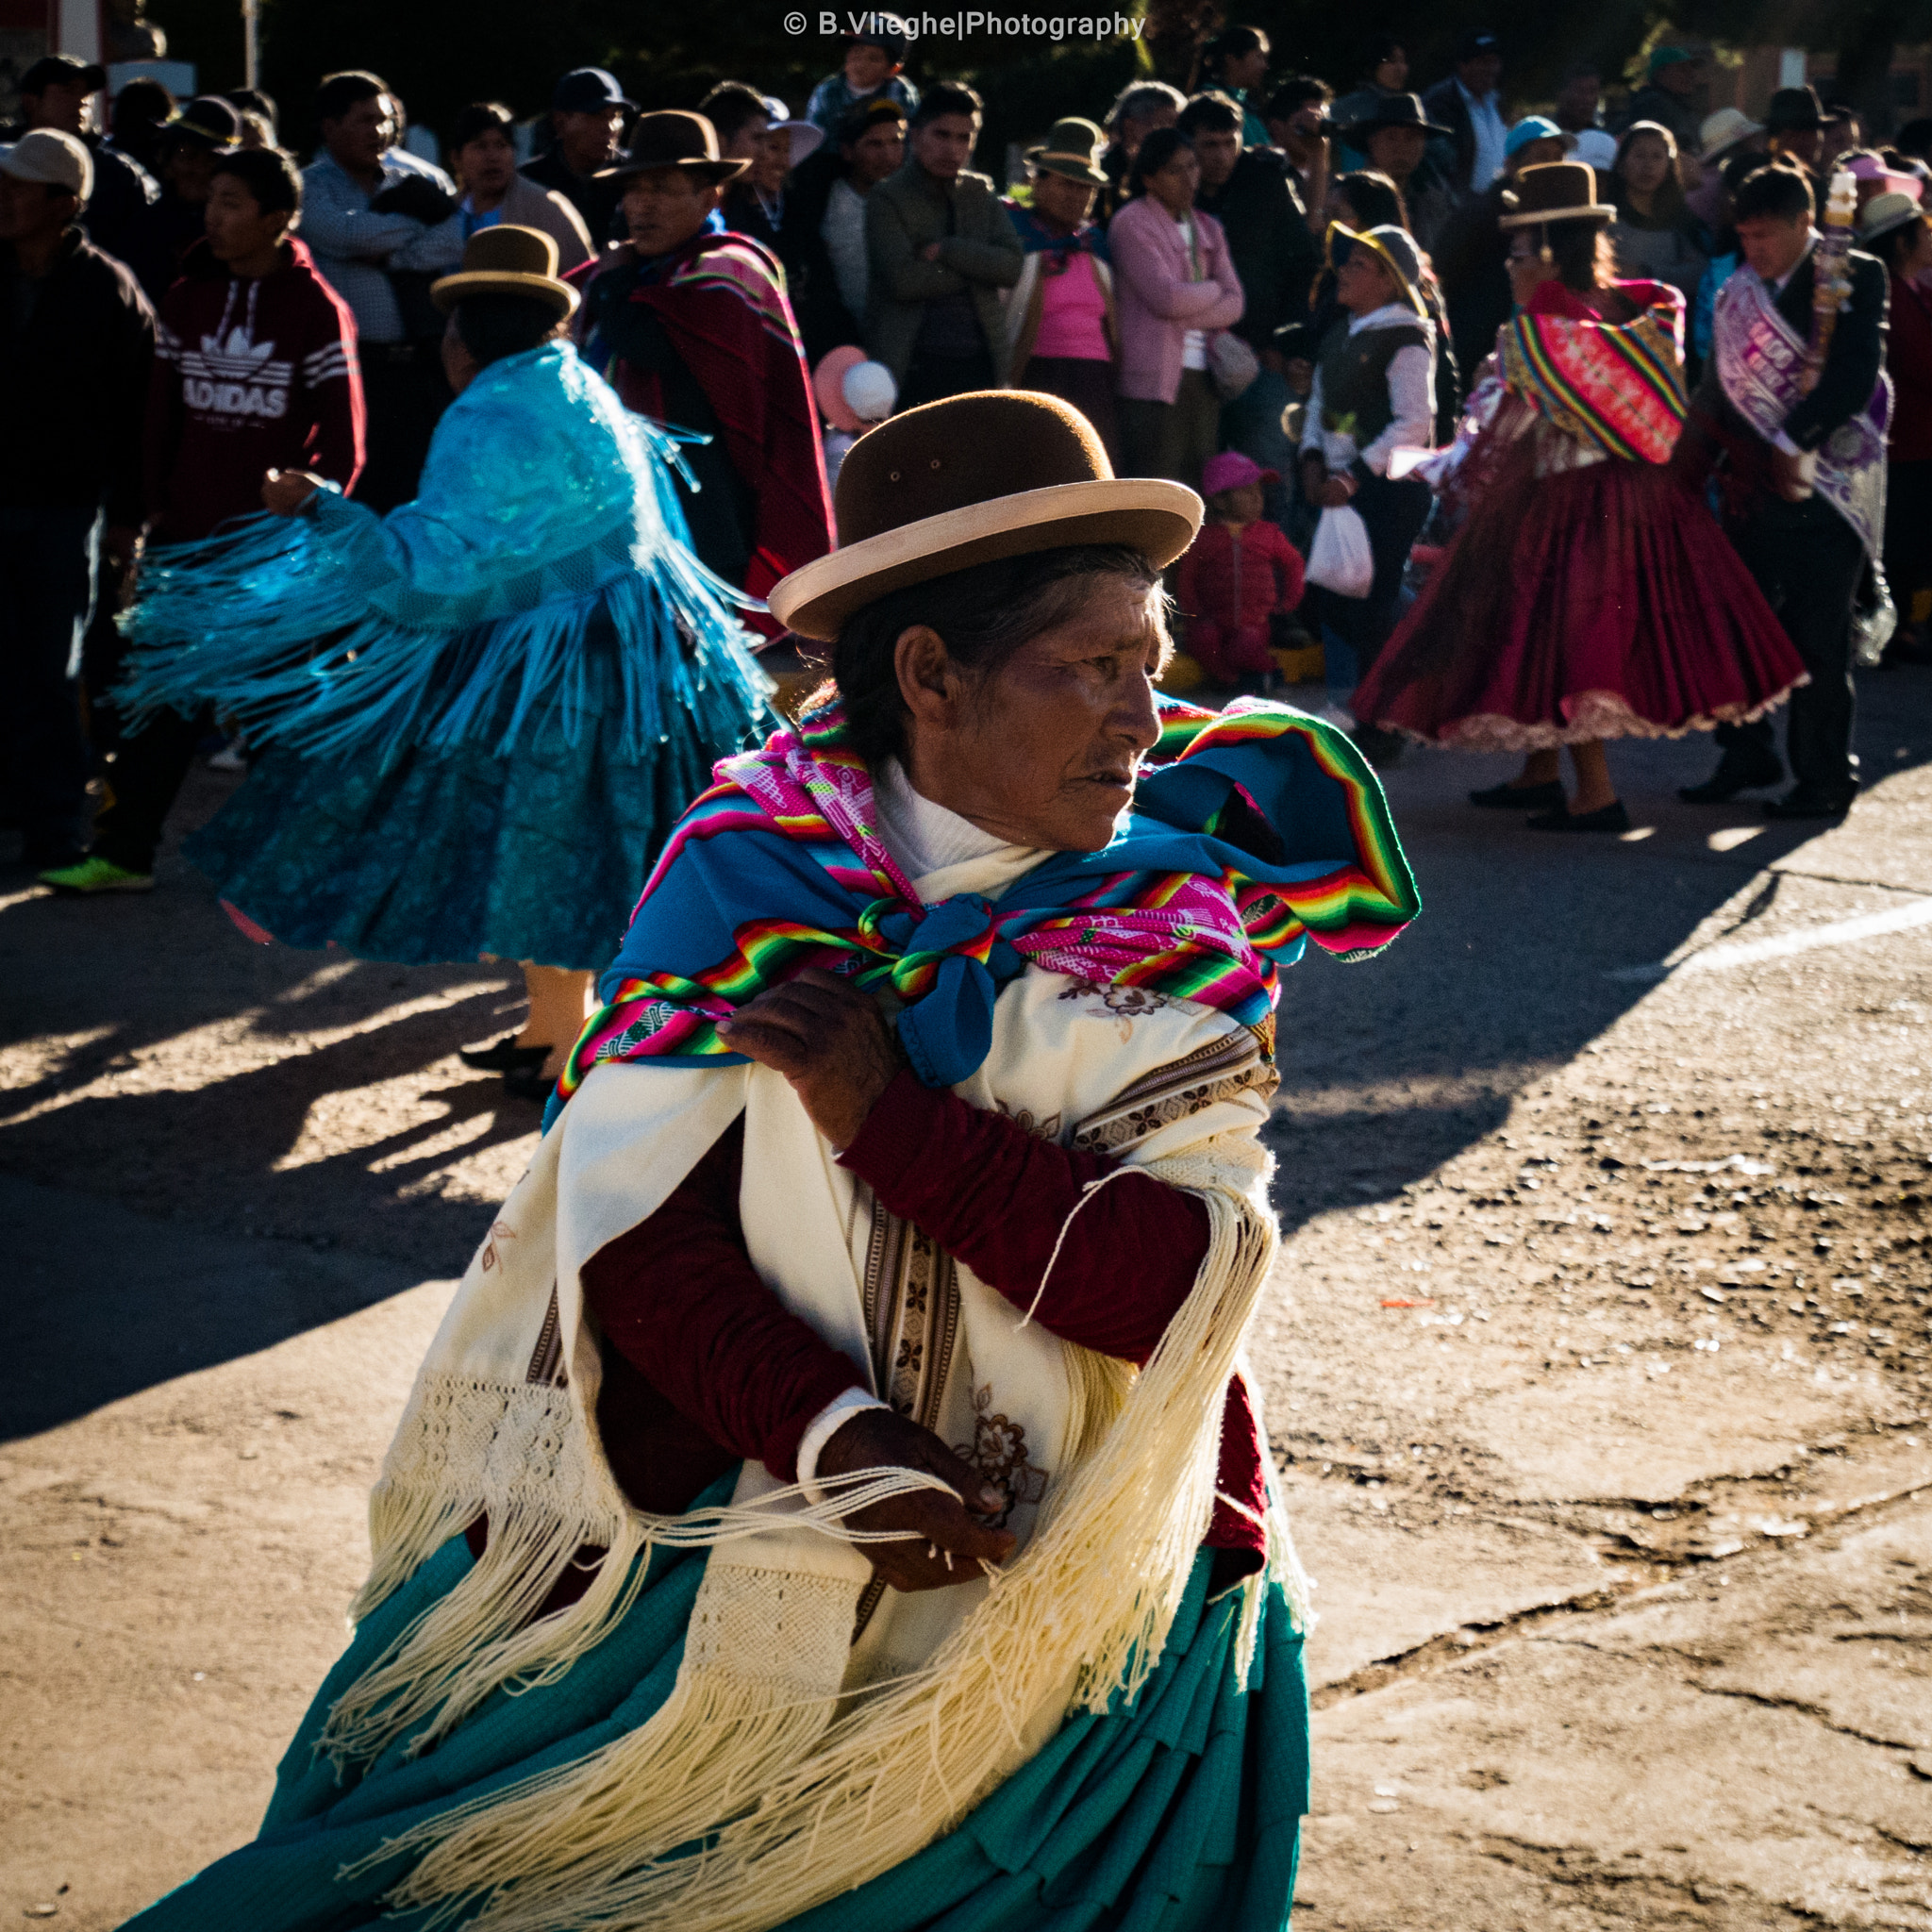 Panasonic Lumix DMC-GF7 sample photo. Traditional aymara woman dancing, huancane, peru photography